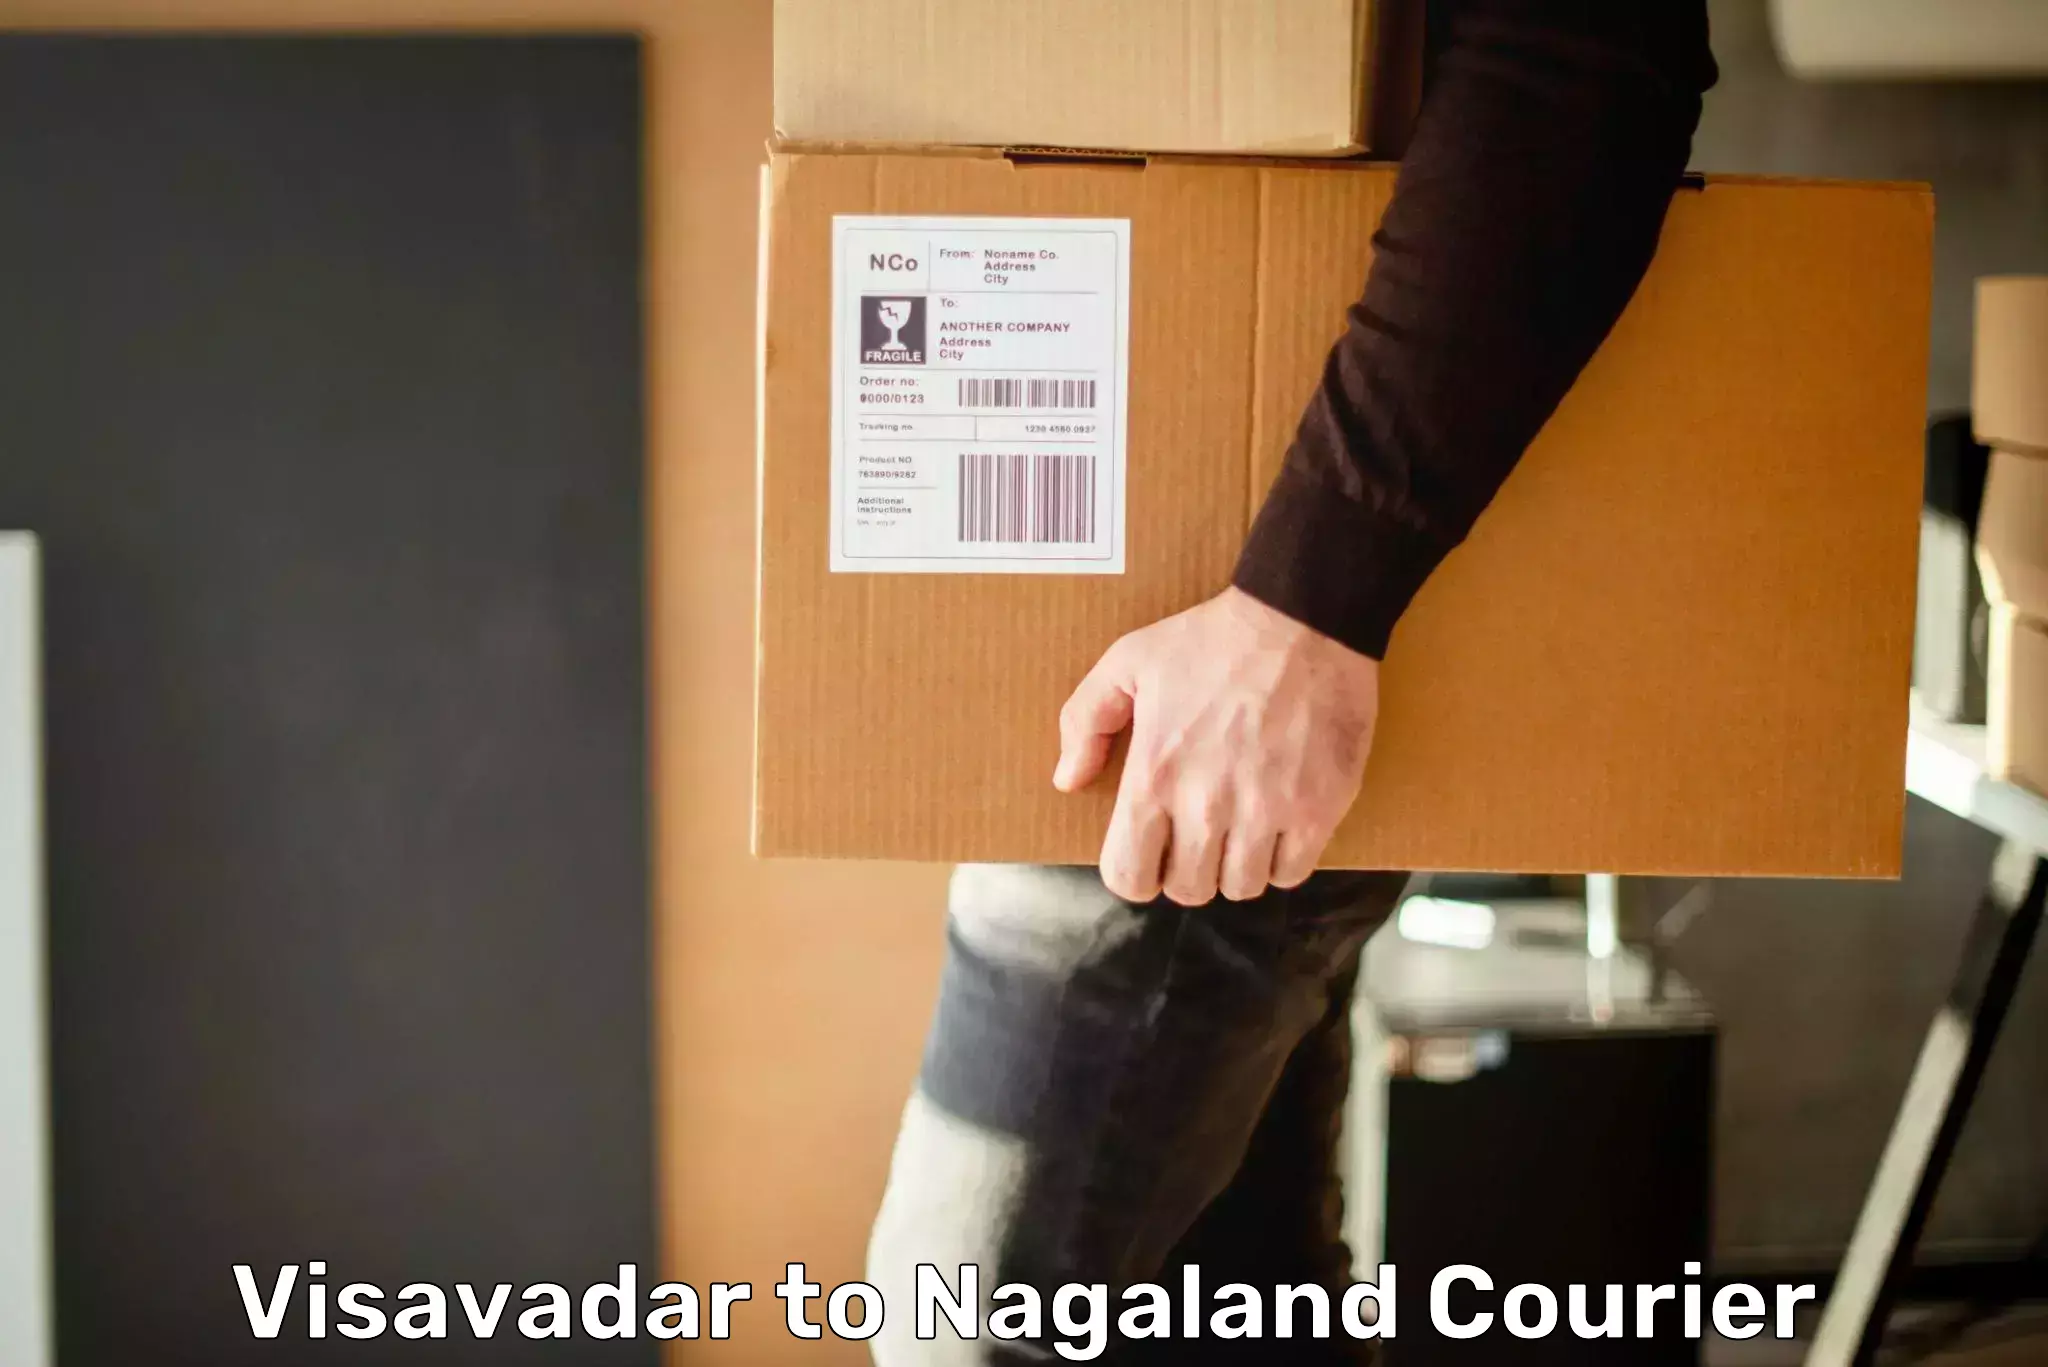 Global shipping solutions Visavadar to Nagaland